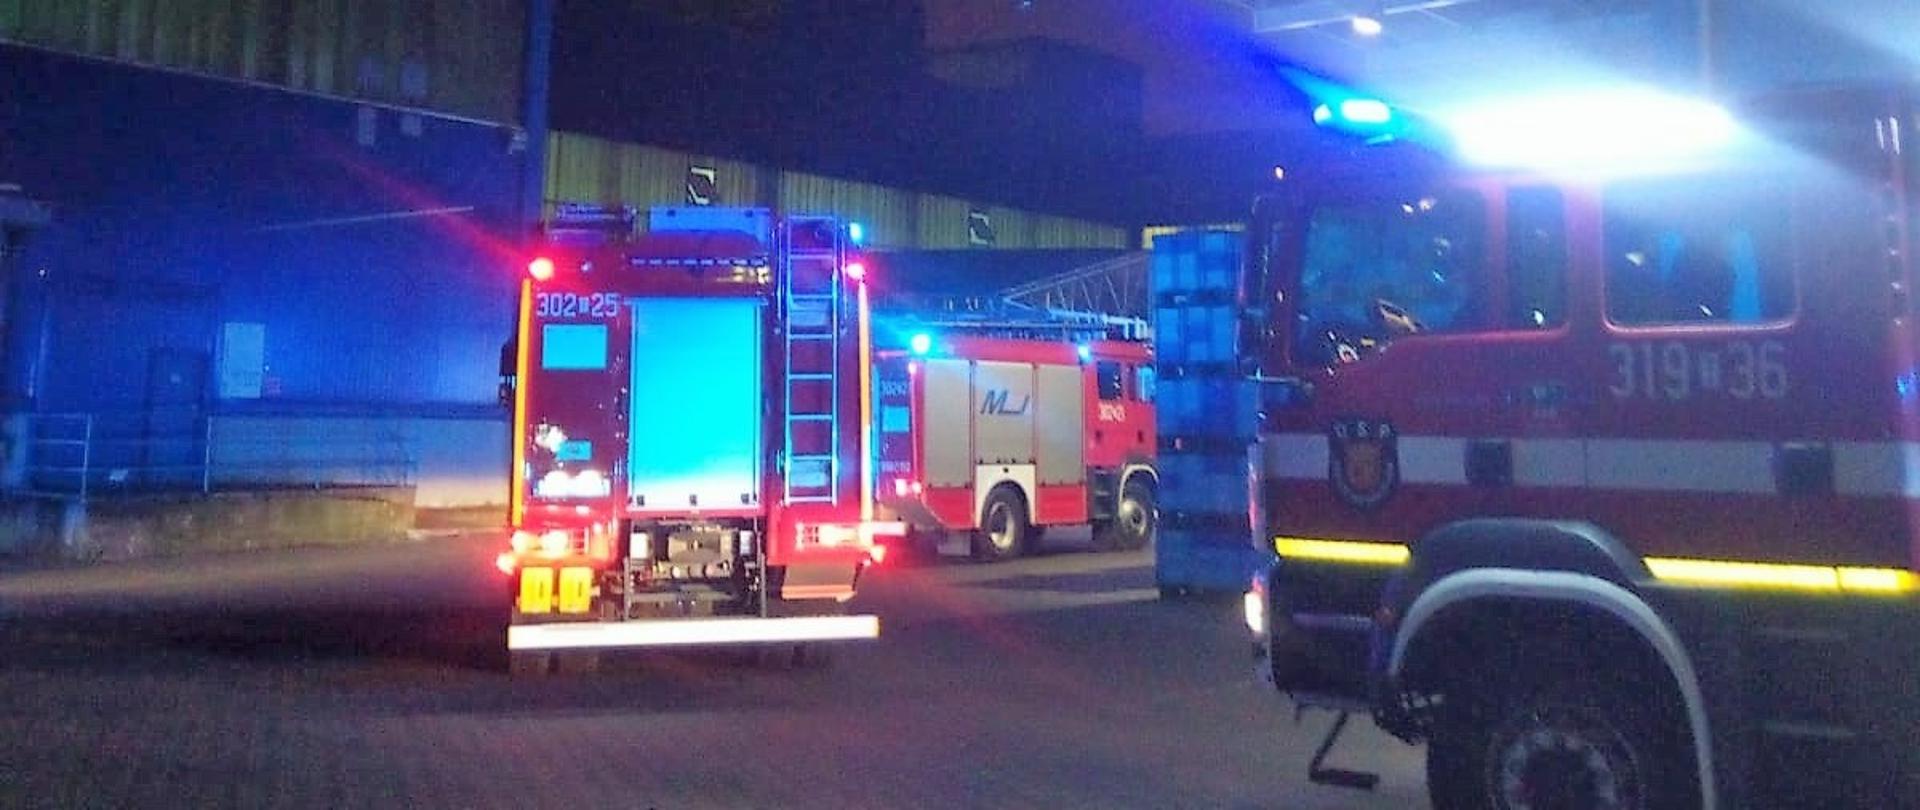 Zdjęcie przedstawia trzy samochody pożarnicze stojące na placu przy hali produkcyjno-magazynowej. W tle hala gdzie doszło do pożaru.